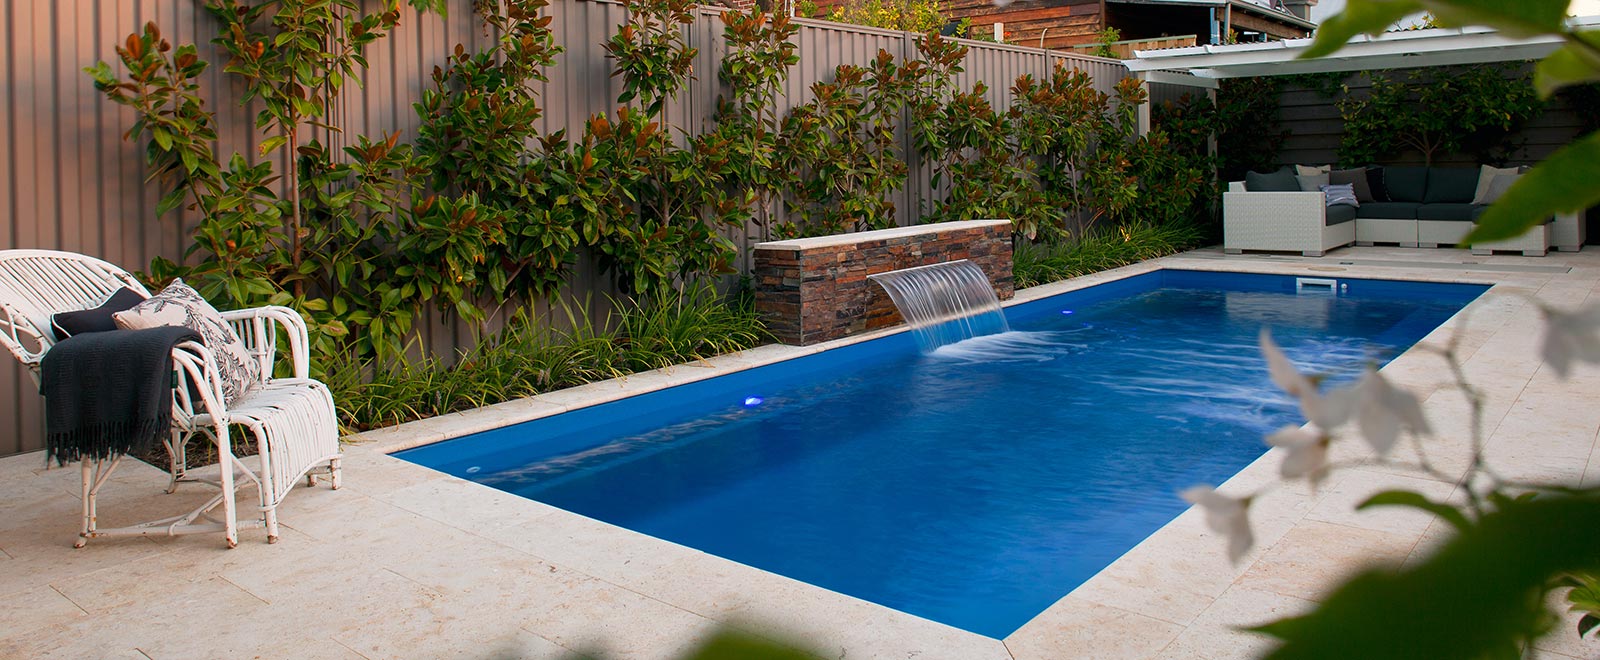 pool installer in Taranaki, including New Plymouth, South Taranaki & Stratford